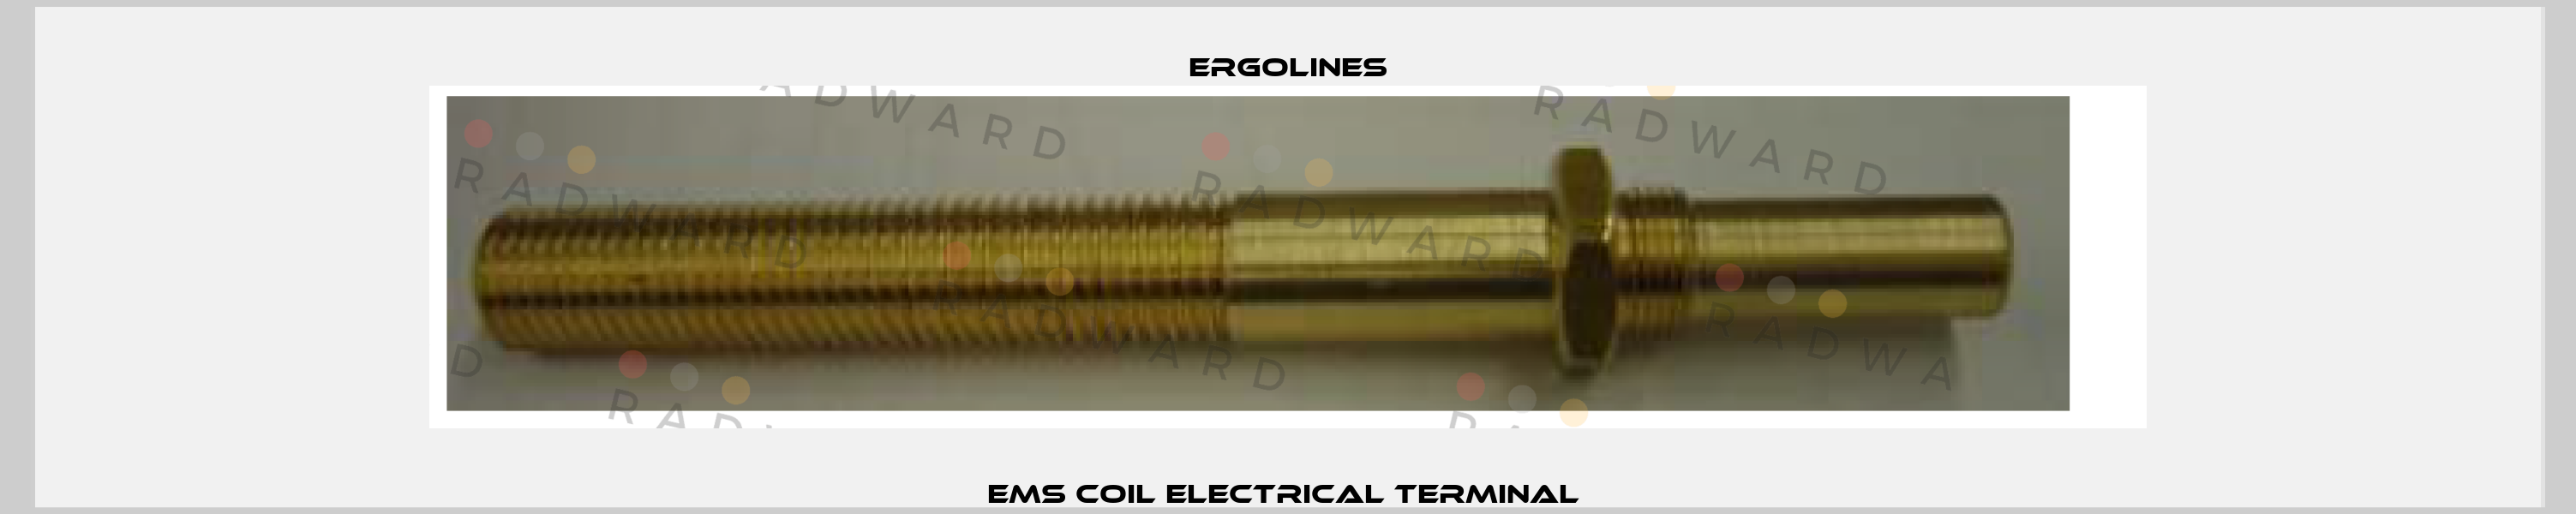 EMS coil electrical terminal  Ergolines